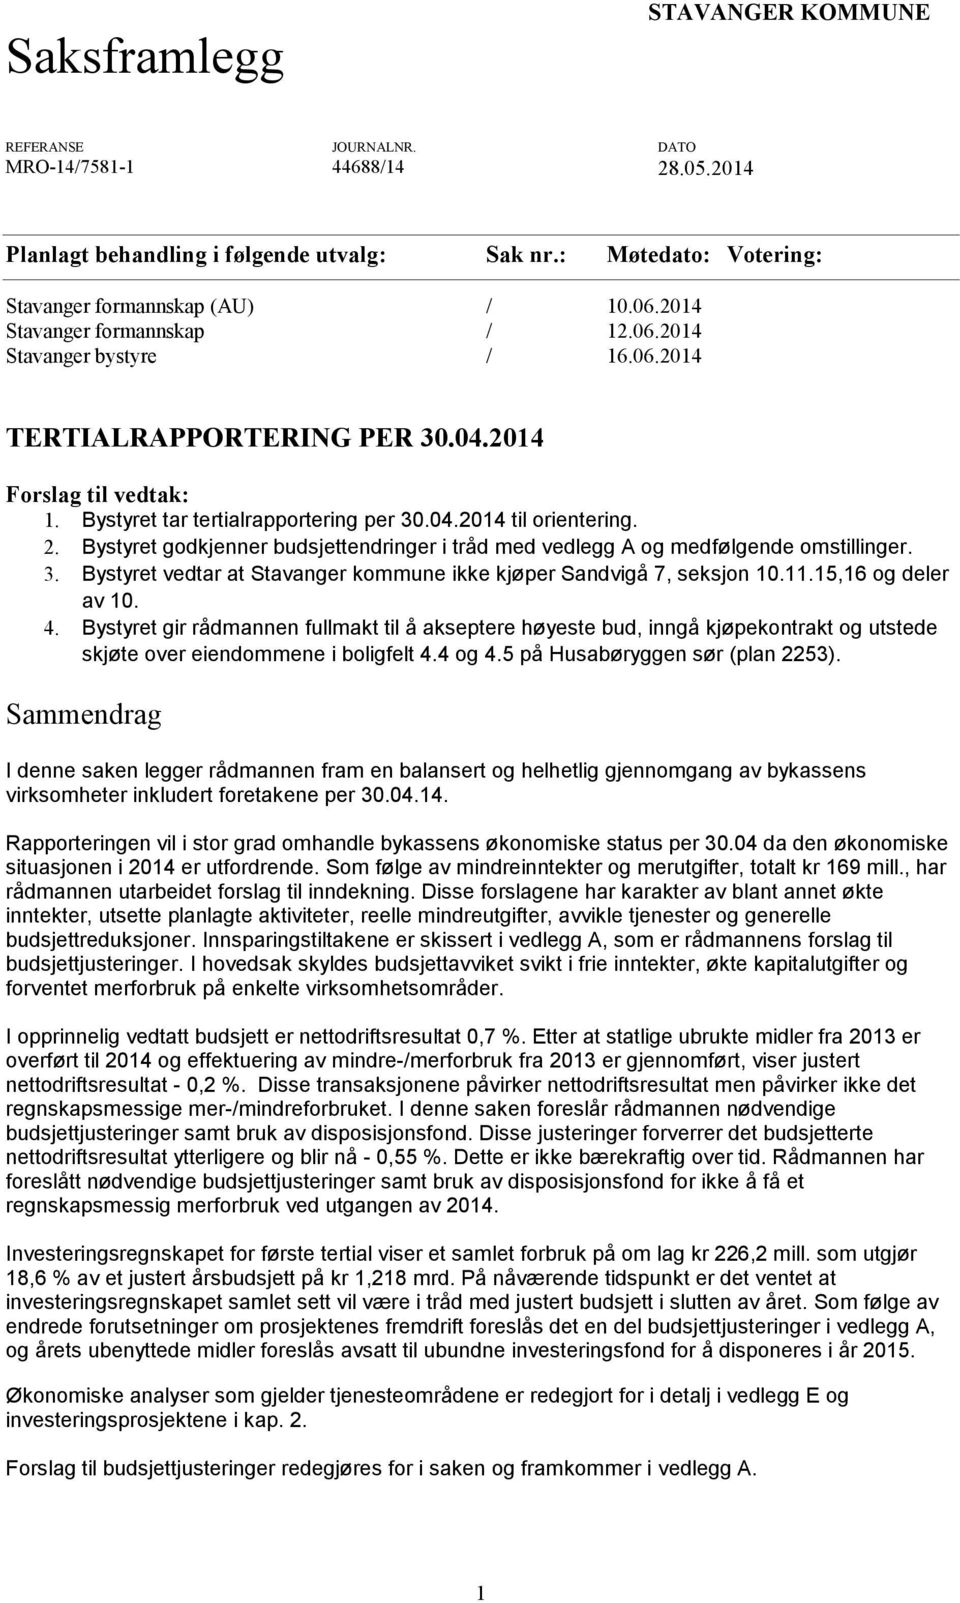 Bystyret godkjenner budsjettendringer i tråd med vedlegg A og medfølgende omstillinger. 3. Bystyret vedtar at Stavanger kommune ikke kjøper Sandvigå 7, seksjon 10.11.15,16 og deler av 10. 4.